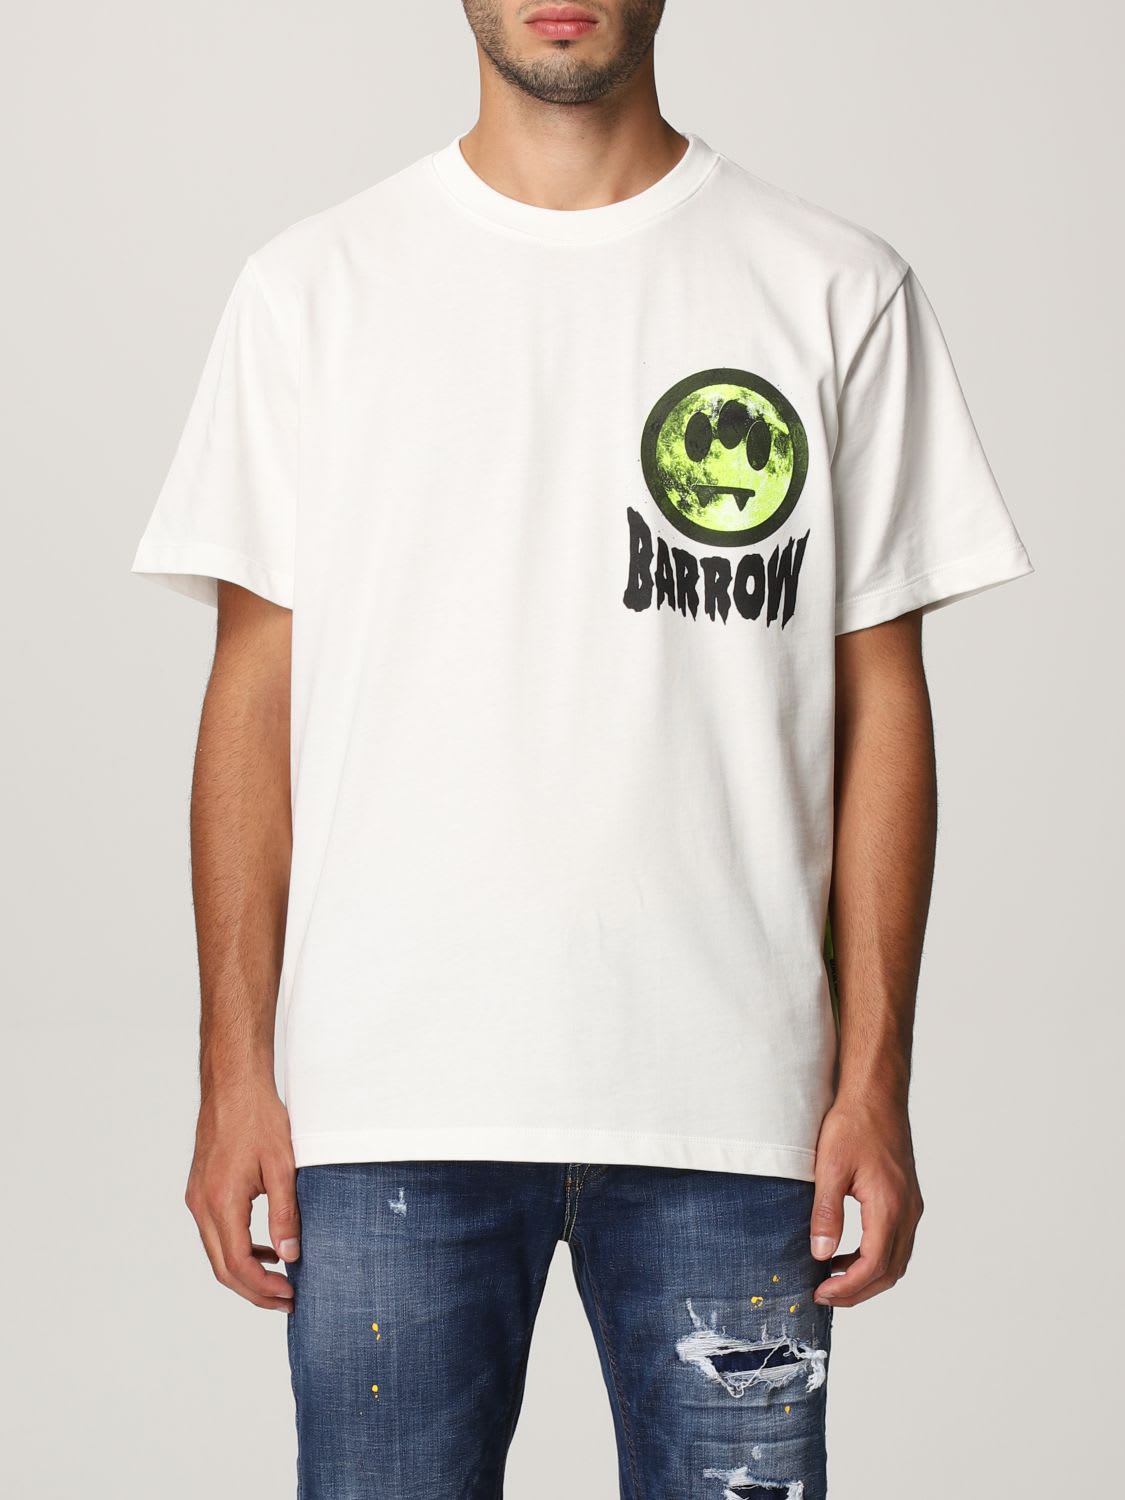 Barrow T-shirt T-shirt Men Barrow